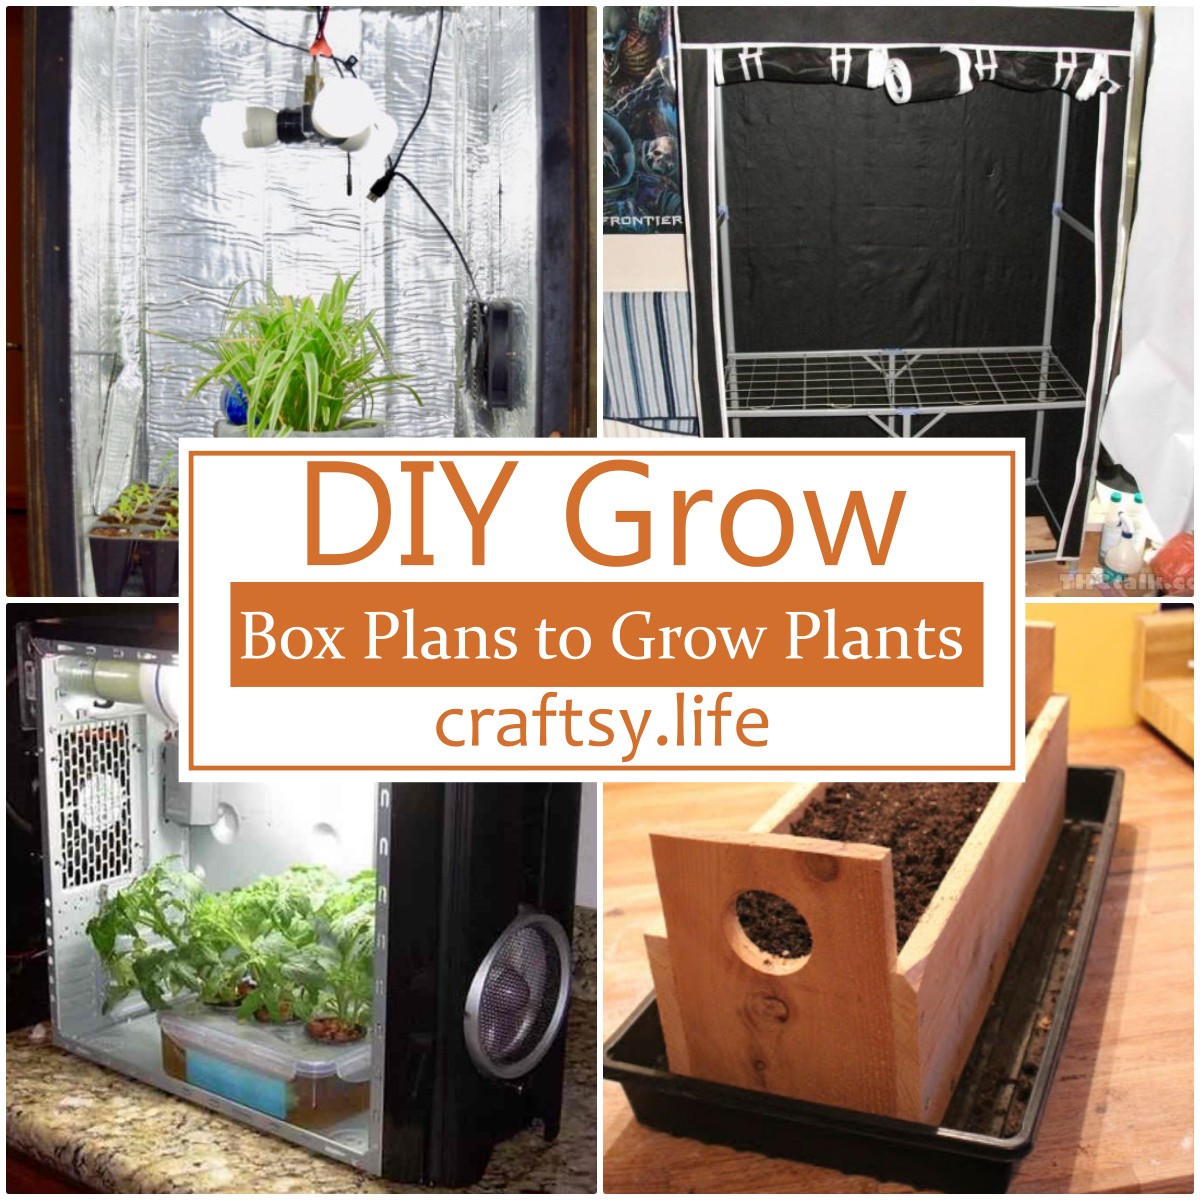 DIY Grow Box Plans to Grow Plants